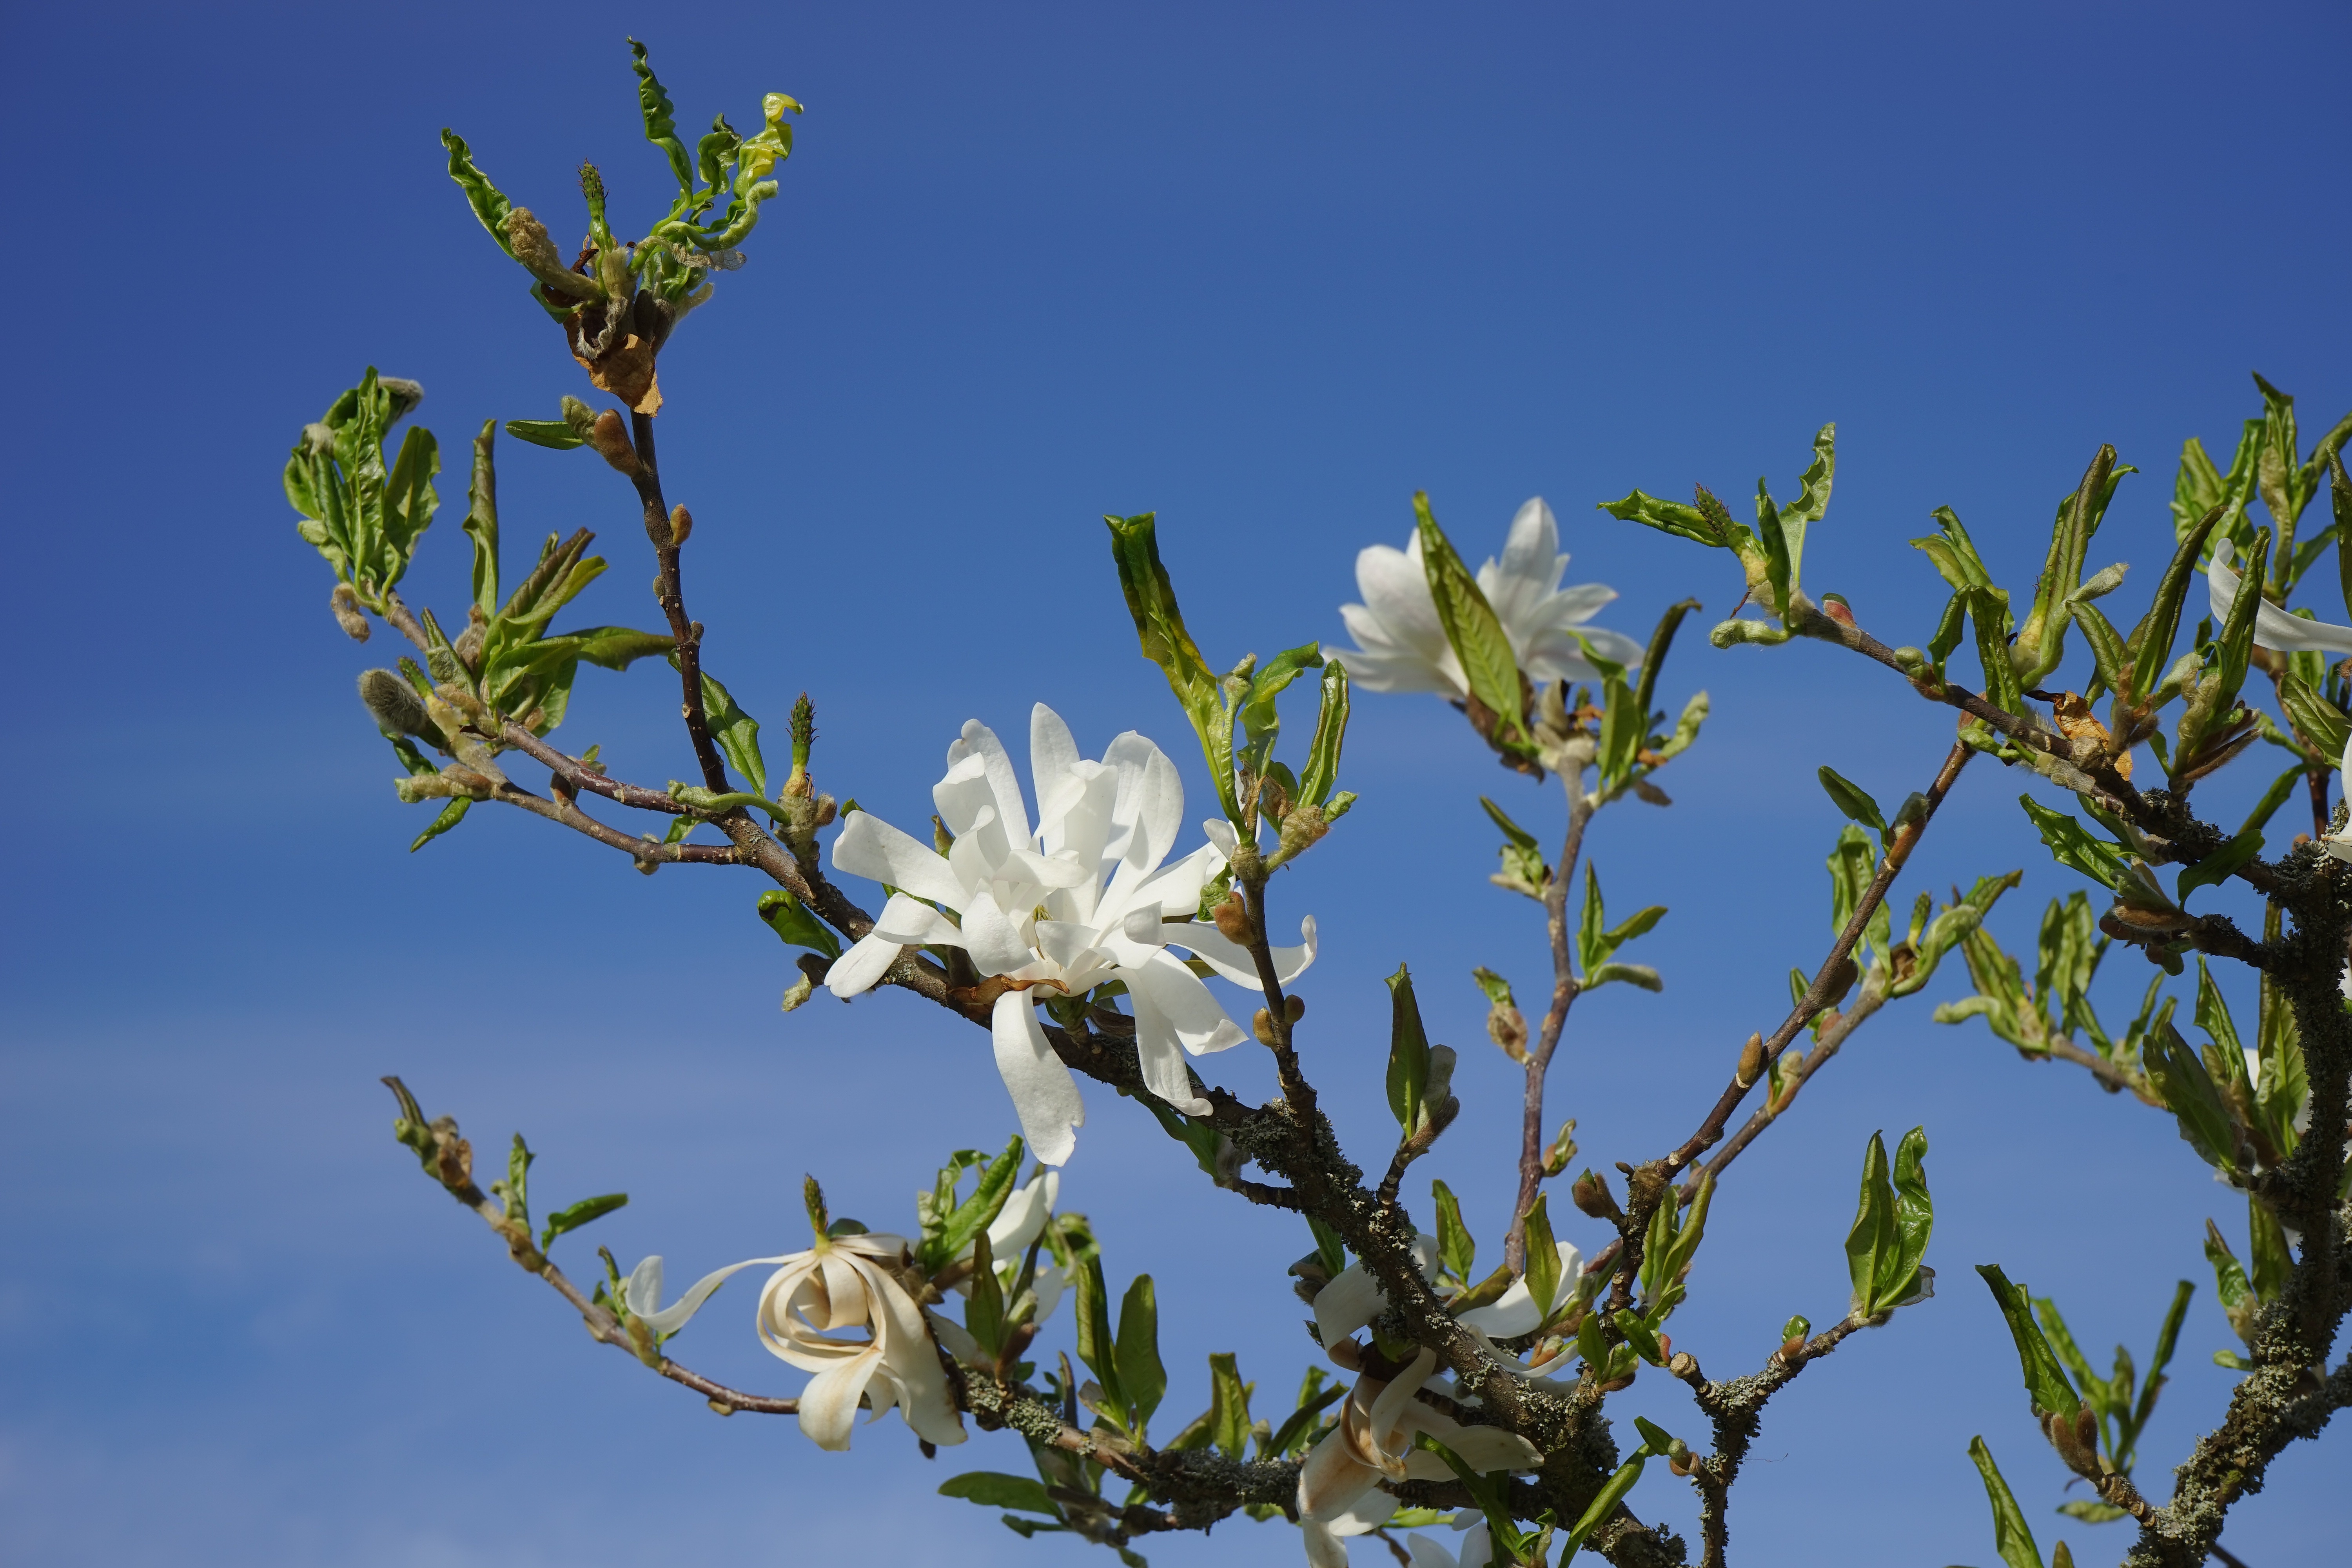 white magnolias